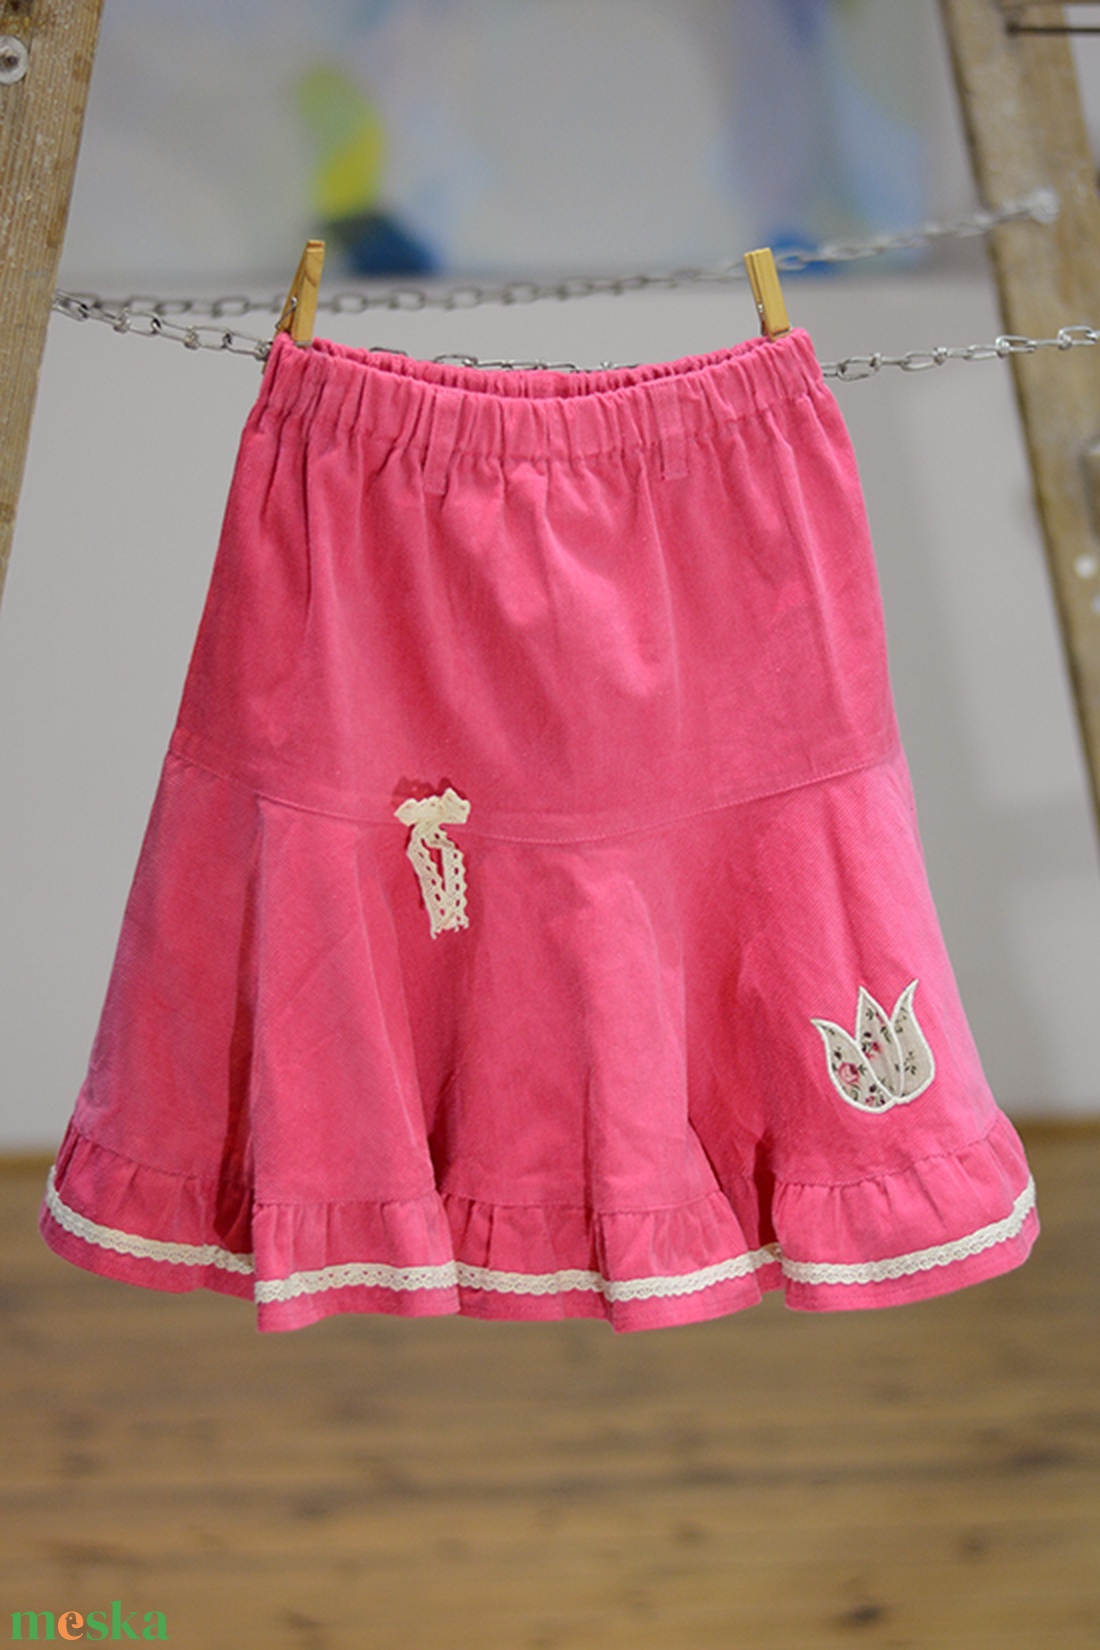 PÖRGŐS kord szoknya, 74-164-es, világos rózsaszín, lány, pamut  csipke díszítéssel  - ruha & divat - női ruha - szoknya - Meska.hu